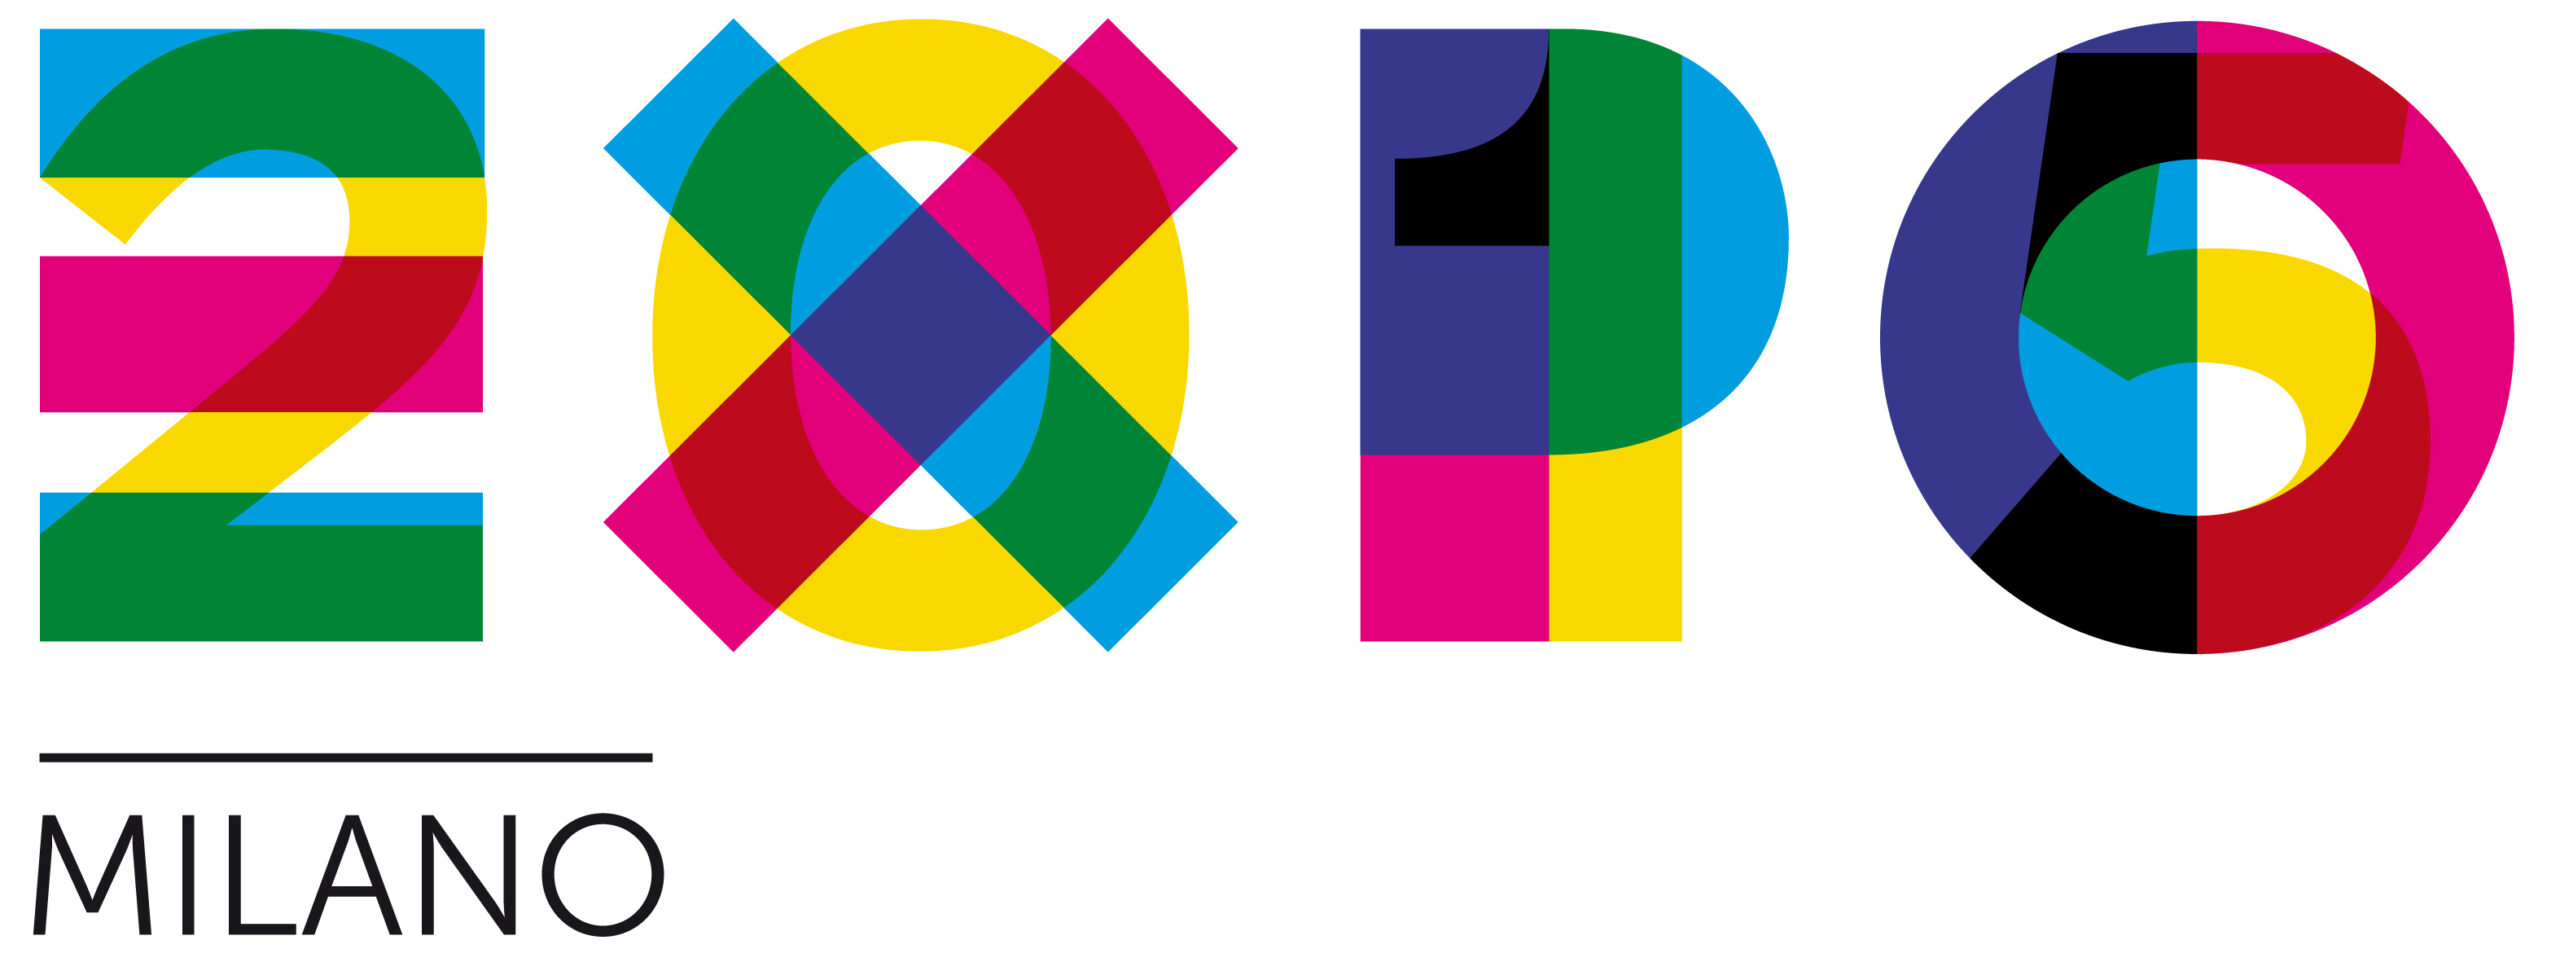 L’Expo 2015 e la Carta di Milano